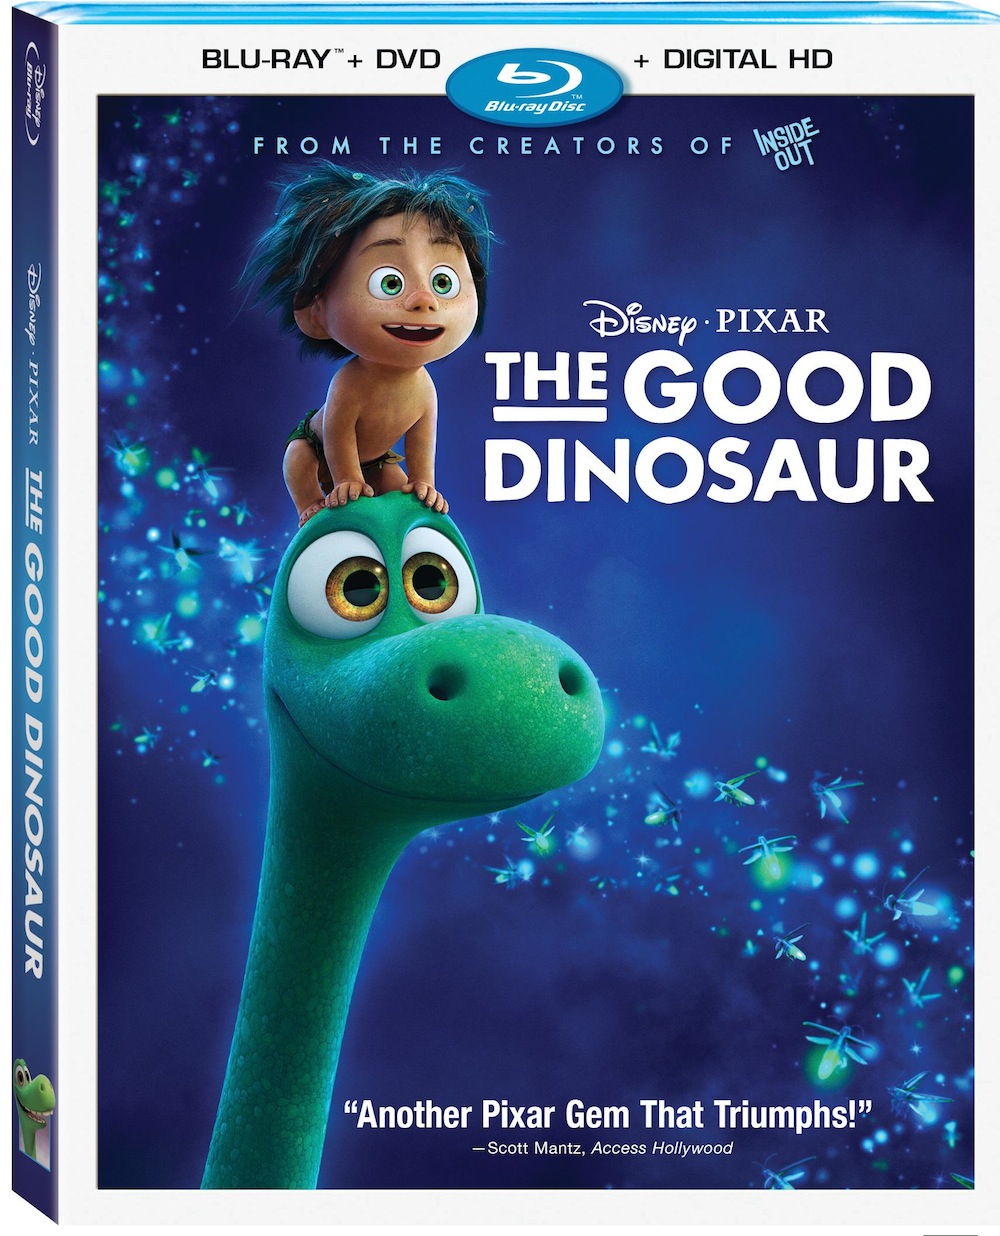 Disney/Pixar Luca Arrives on Home Video August 3rd - The Geek's Blog @  disneygeek.com